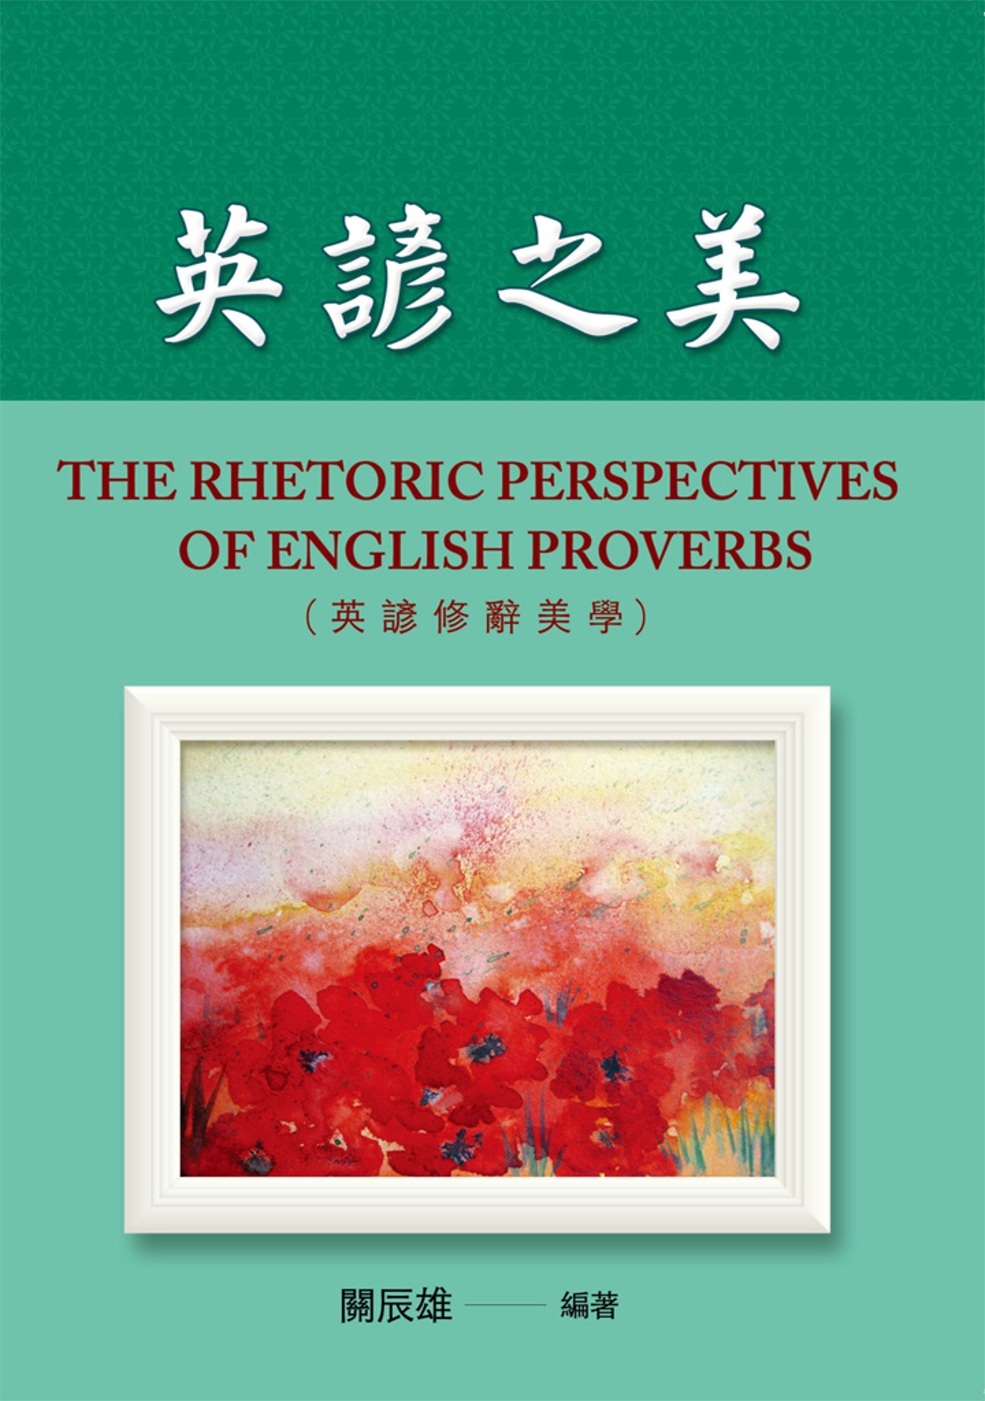 英諺之美 (The Rhetoric Perspectives of English Proverbs)